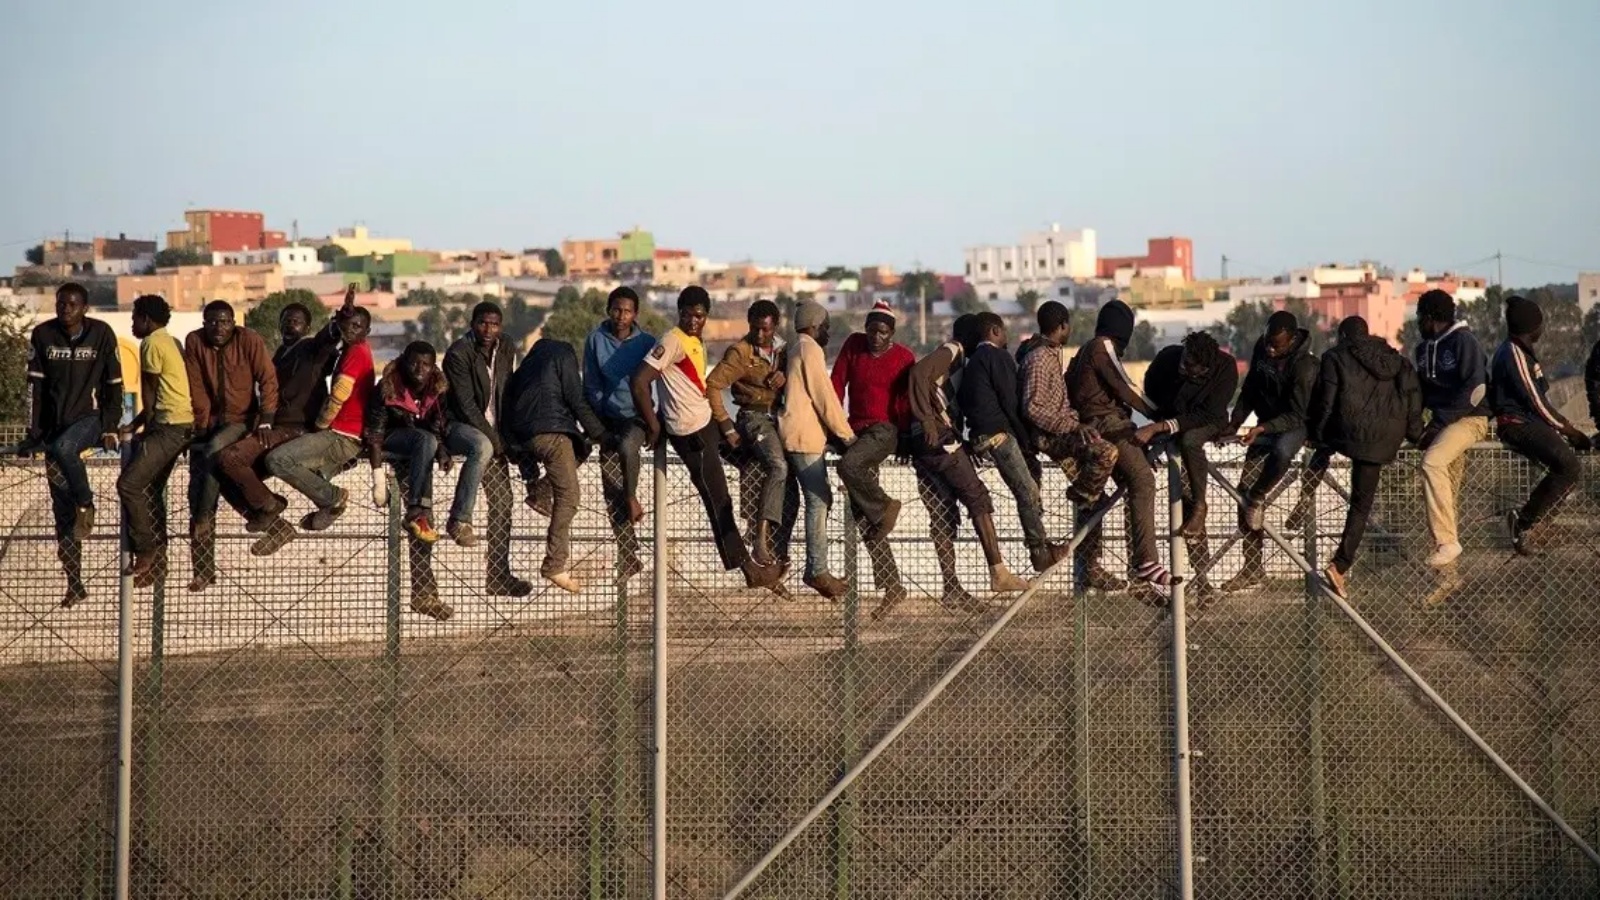 مهاجرون محتملون يقفون فوق سياج حدودي يفصل المغرب عن جيب مليلية الإسباني في شمال أفريقيا